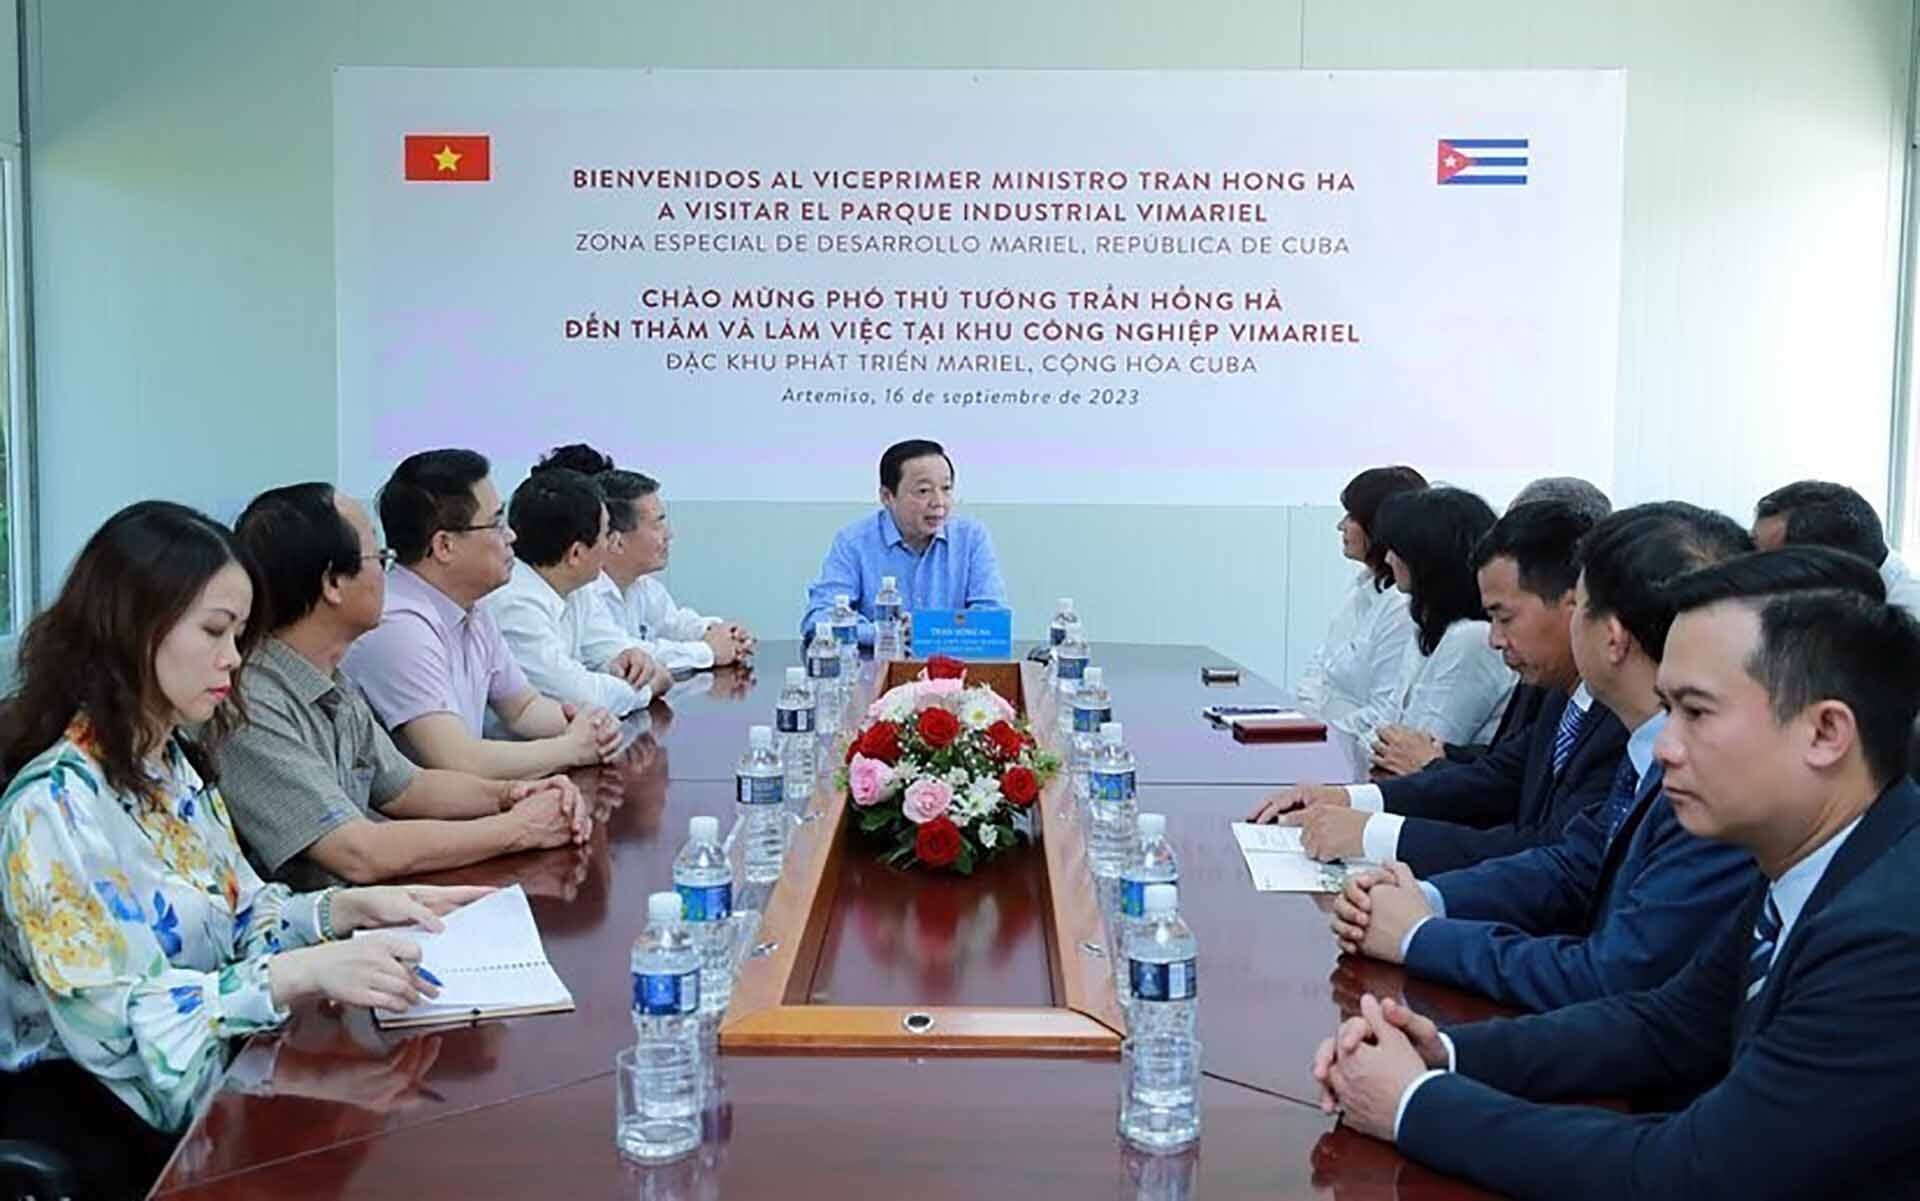 Ngoại giao kinh tế góp phần thắt chặt mối quan hệ hữu nghị, hợp tác đặc biệt giữa Việt Nam và Cuba